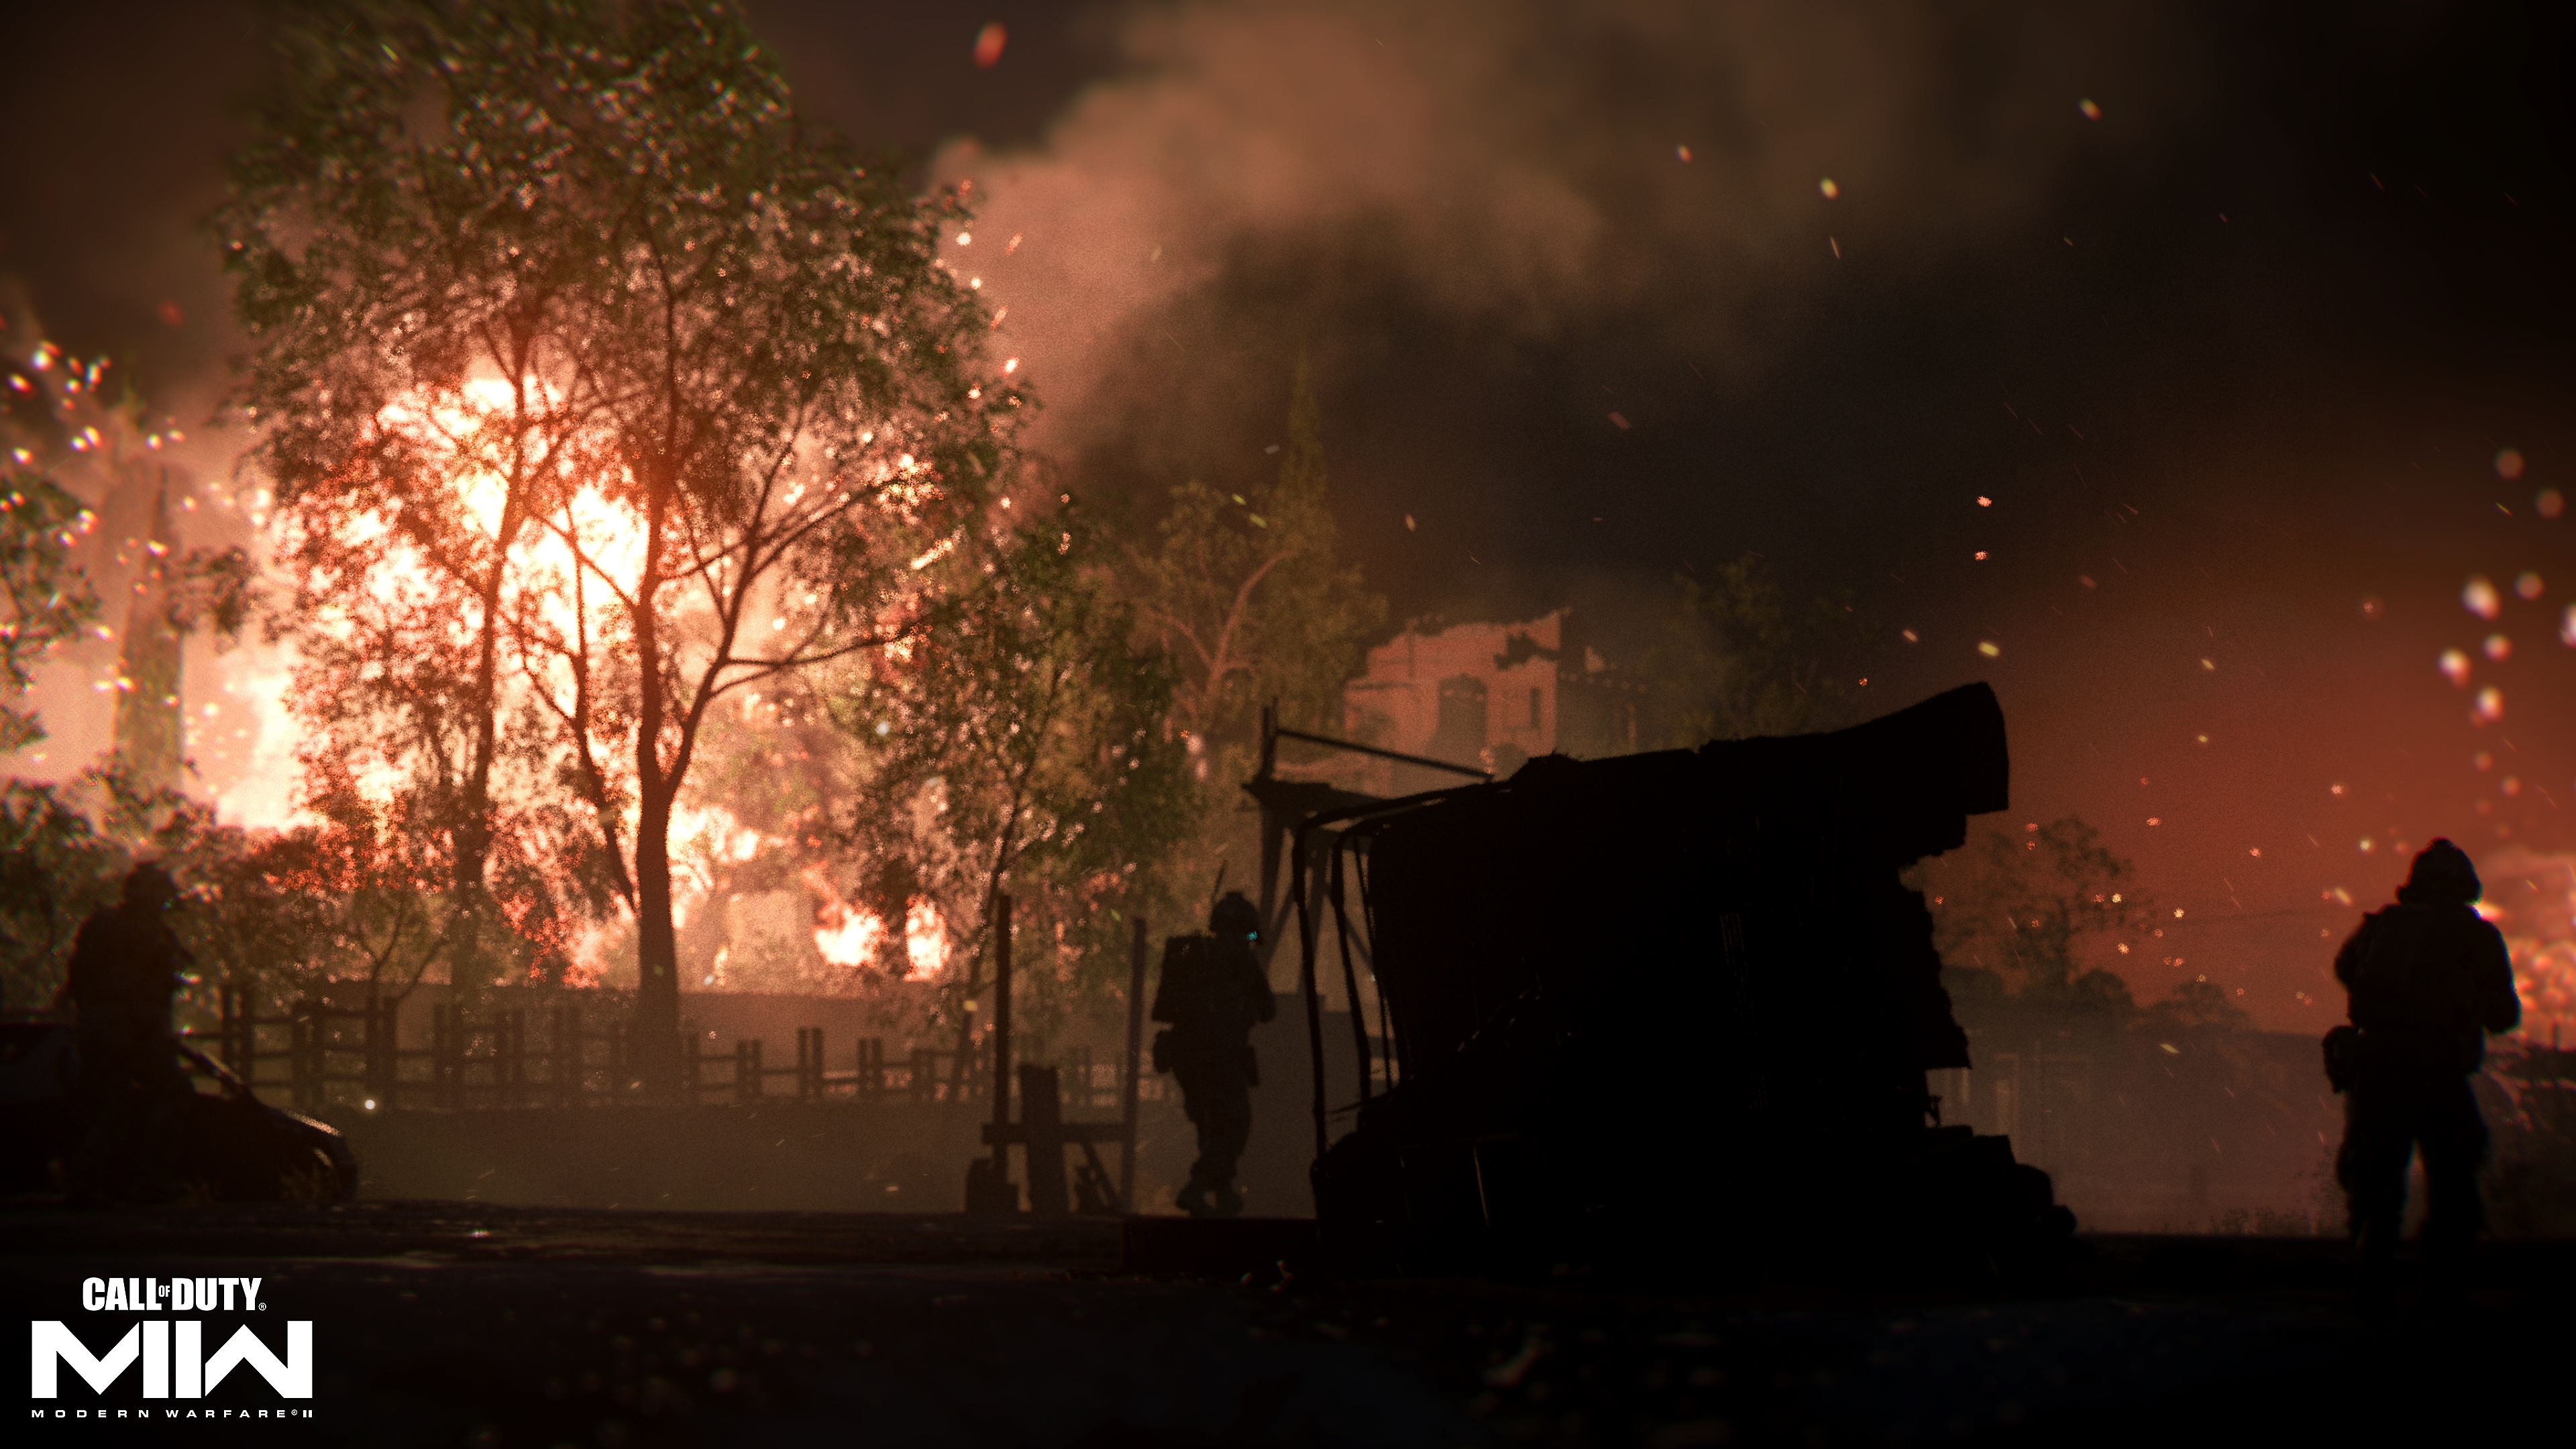 Call of Duty: Modern Warfare 2 2022 captura de pantalla que muestra un incendio a lo lejos detrás de un árbol